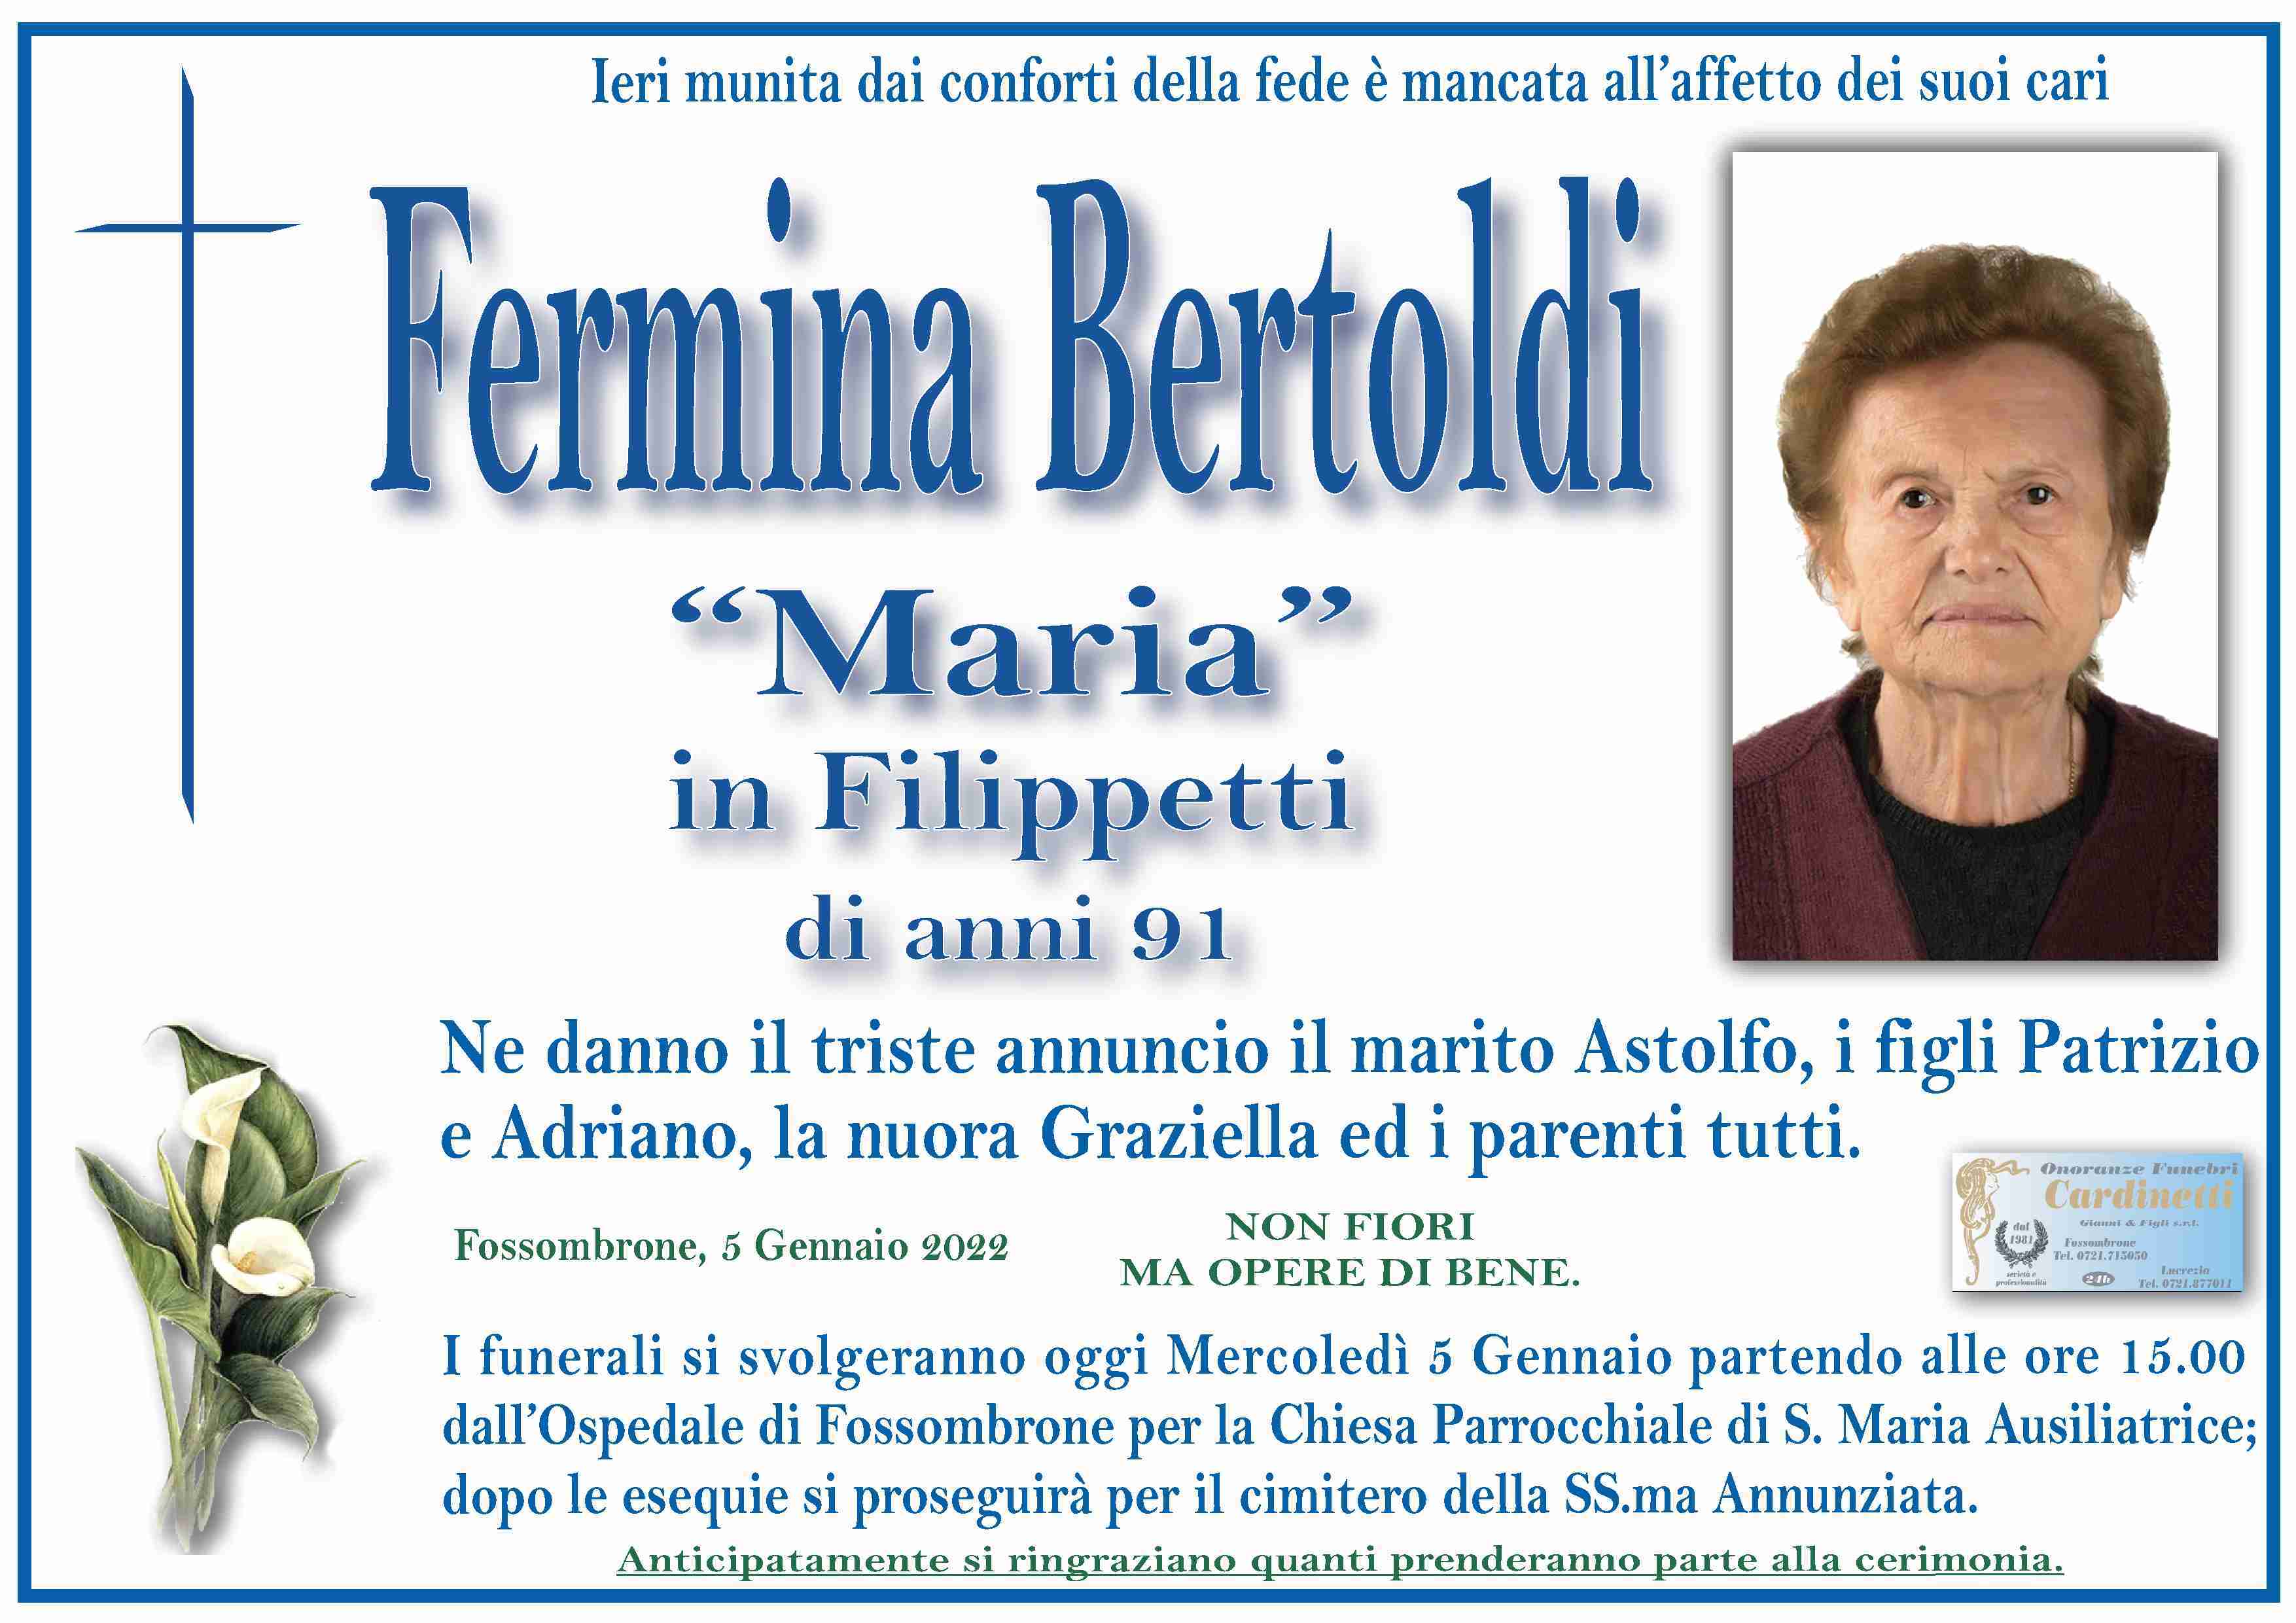 Fermina Bertoldi